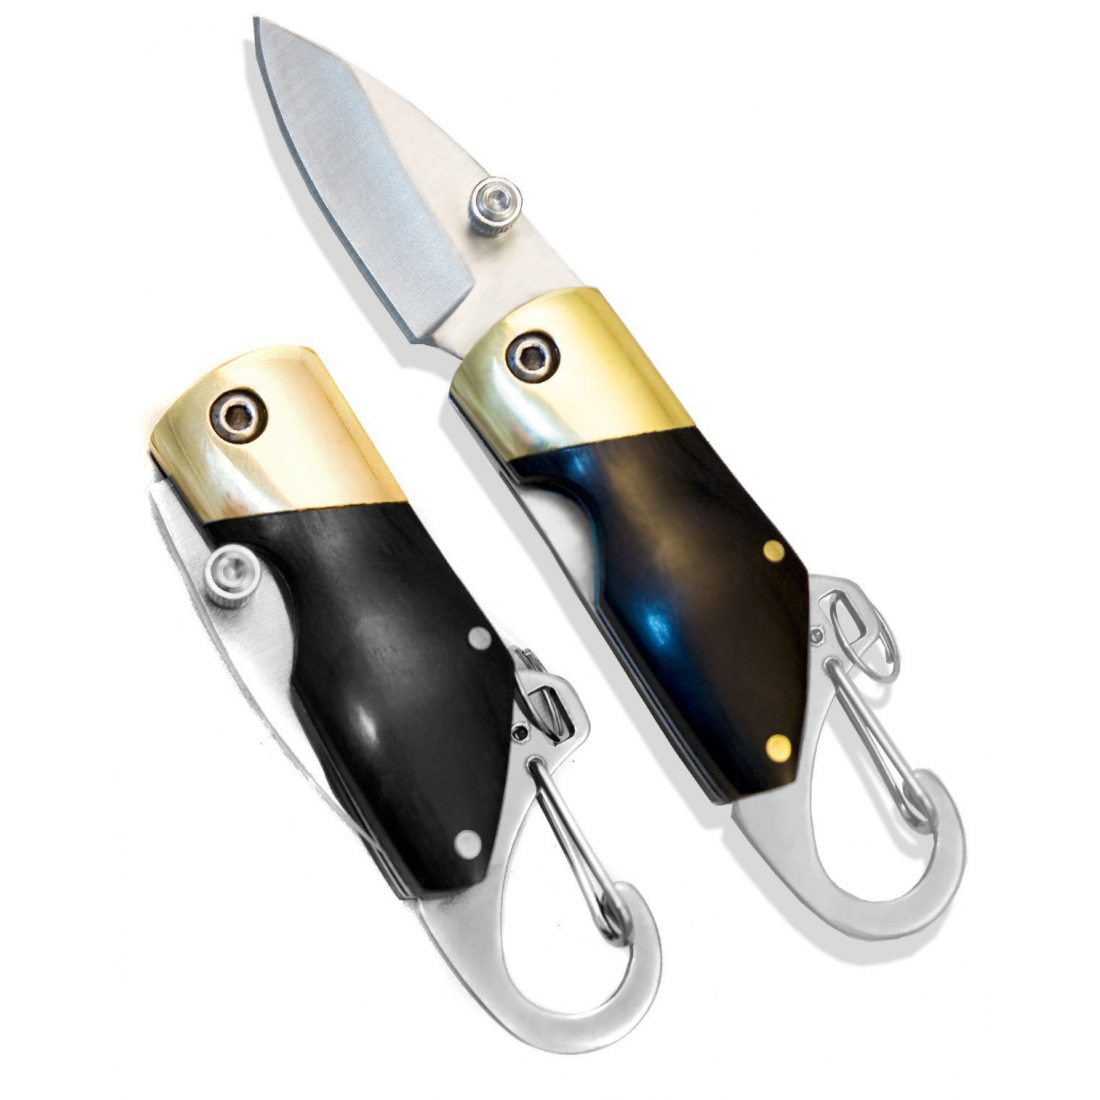 Outdoor Saxx - Mini couteau pliant - Sous forme de porte-clés - Avec mousqueton - 11 cm - Manche en bois - Sac avec passant d